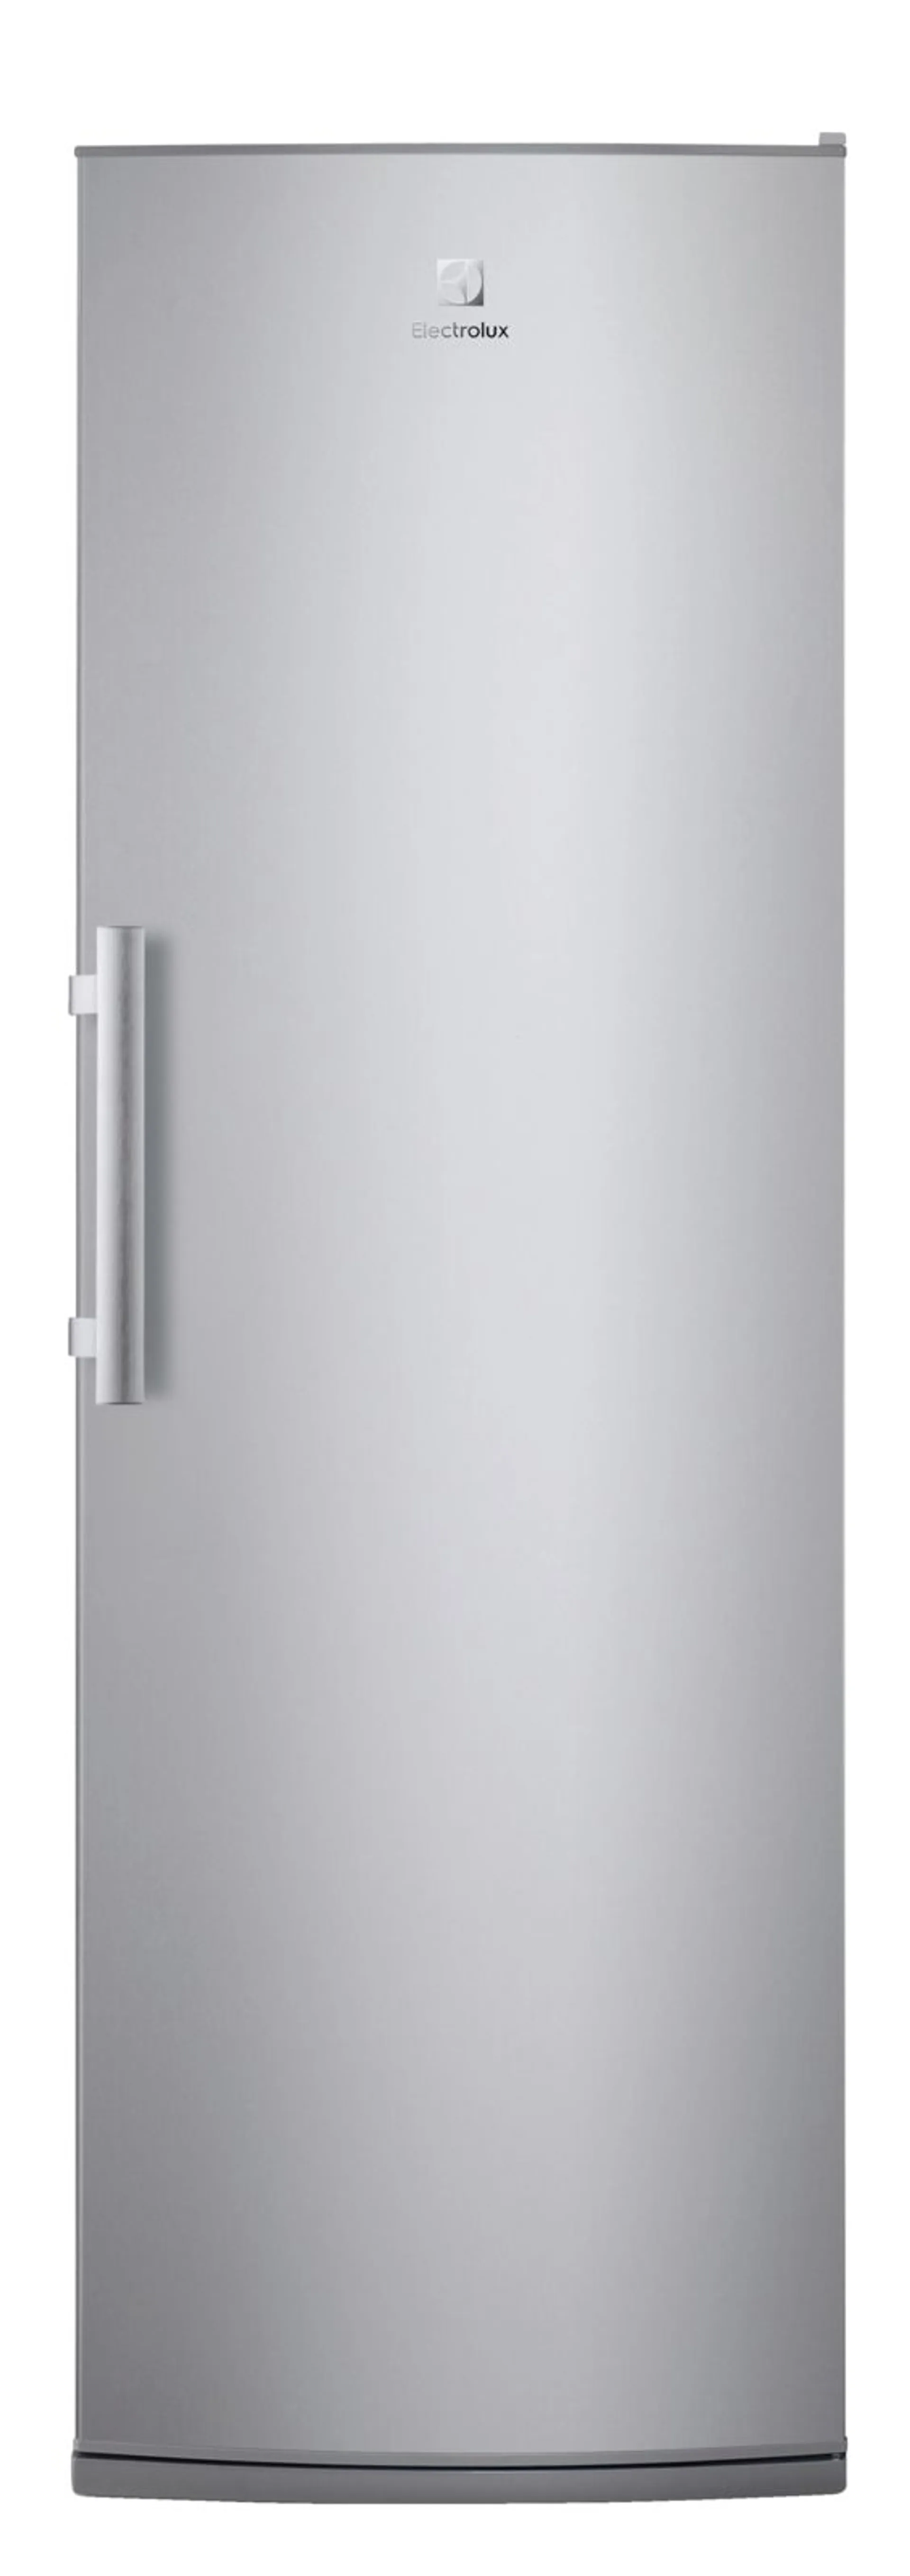 Electrolux jääkaappi 186 cm LRS1DF39X teräs